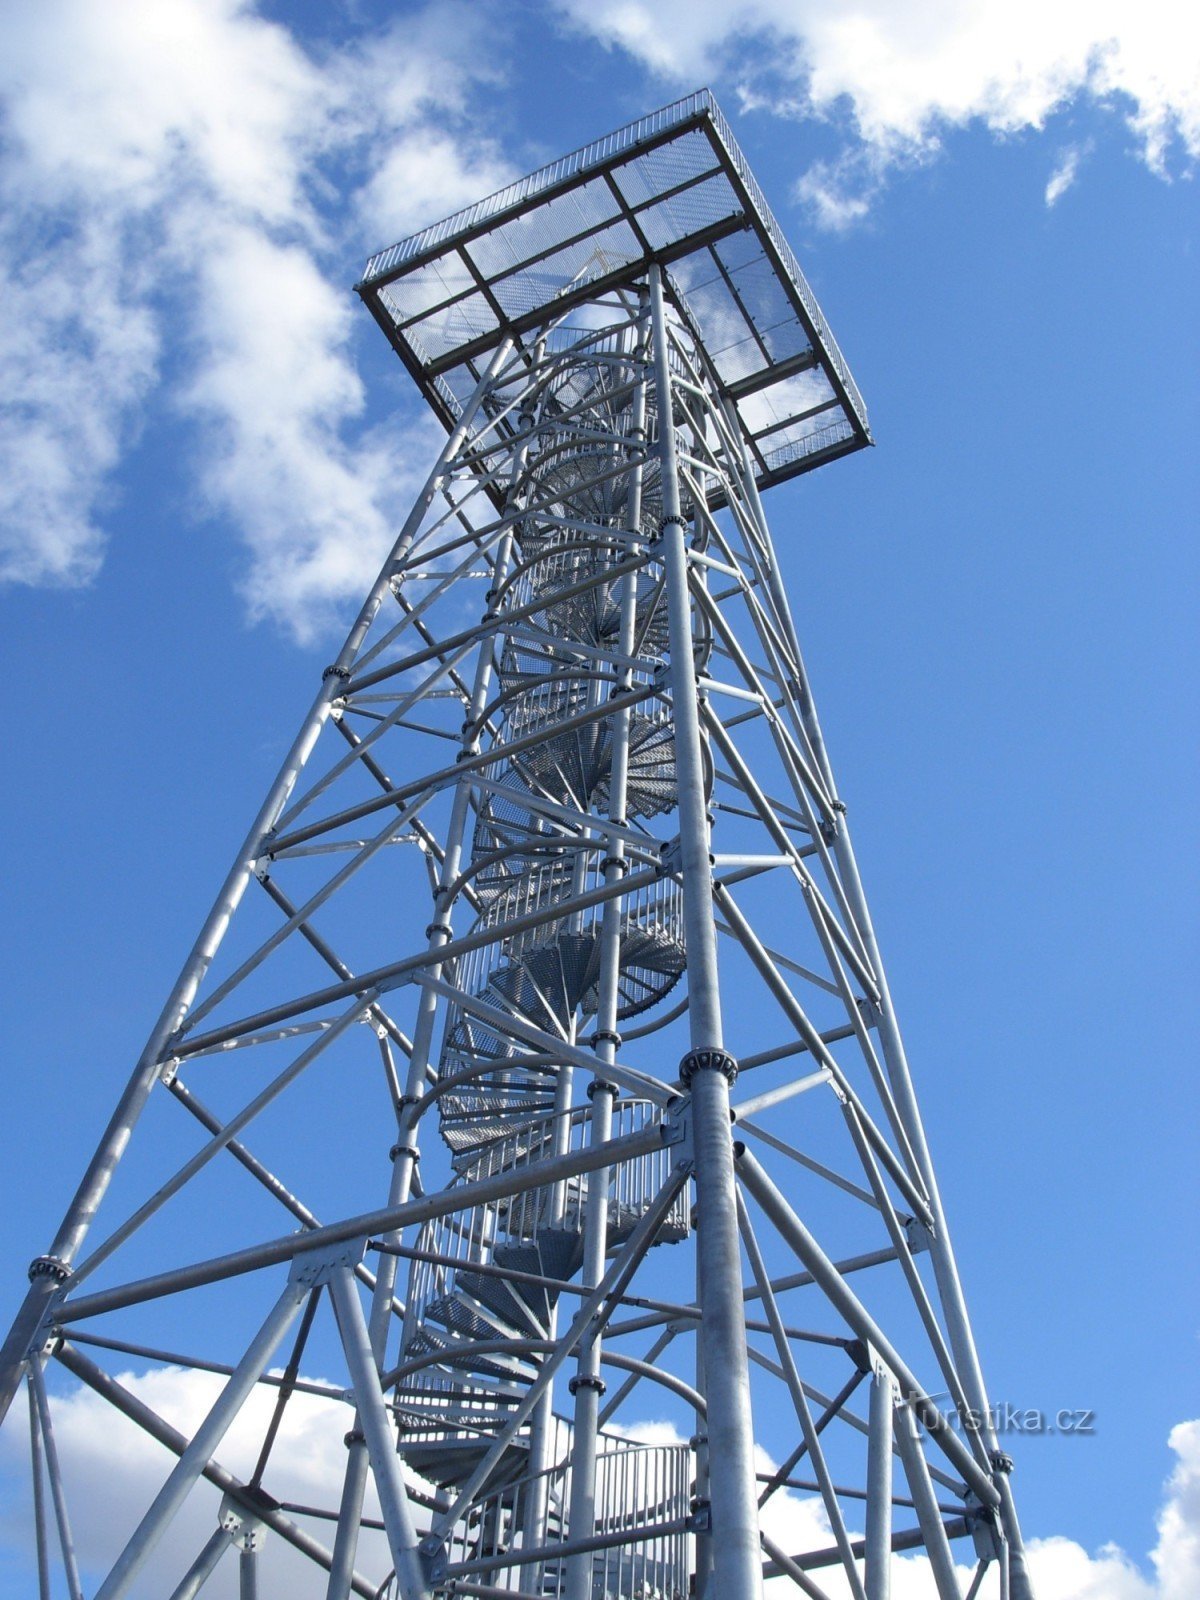 Torre de vigia Na Podluží